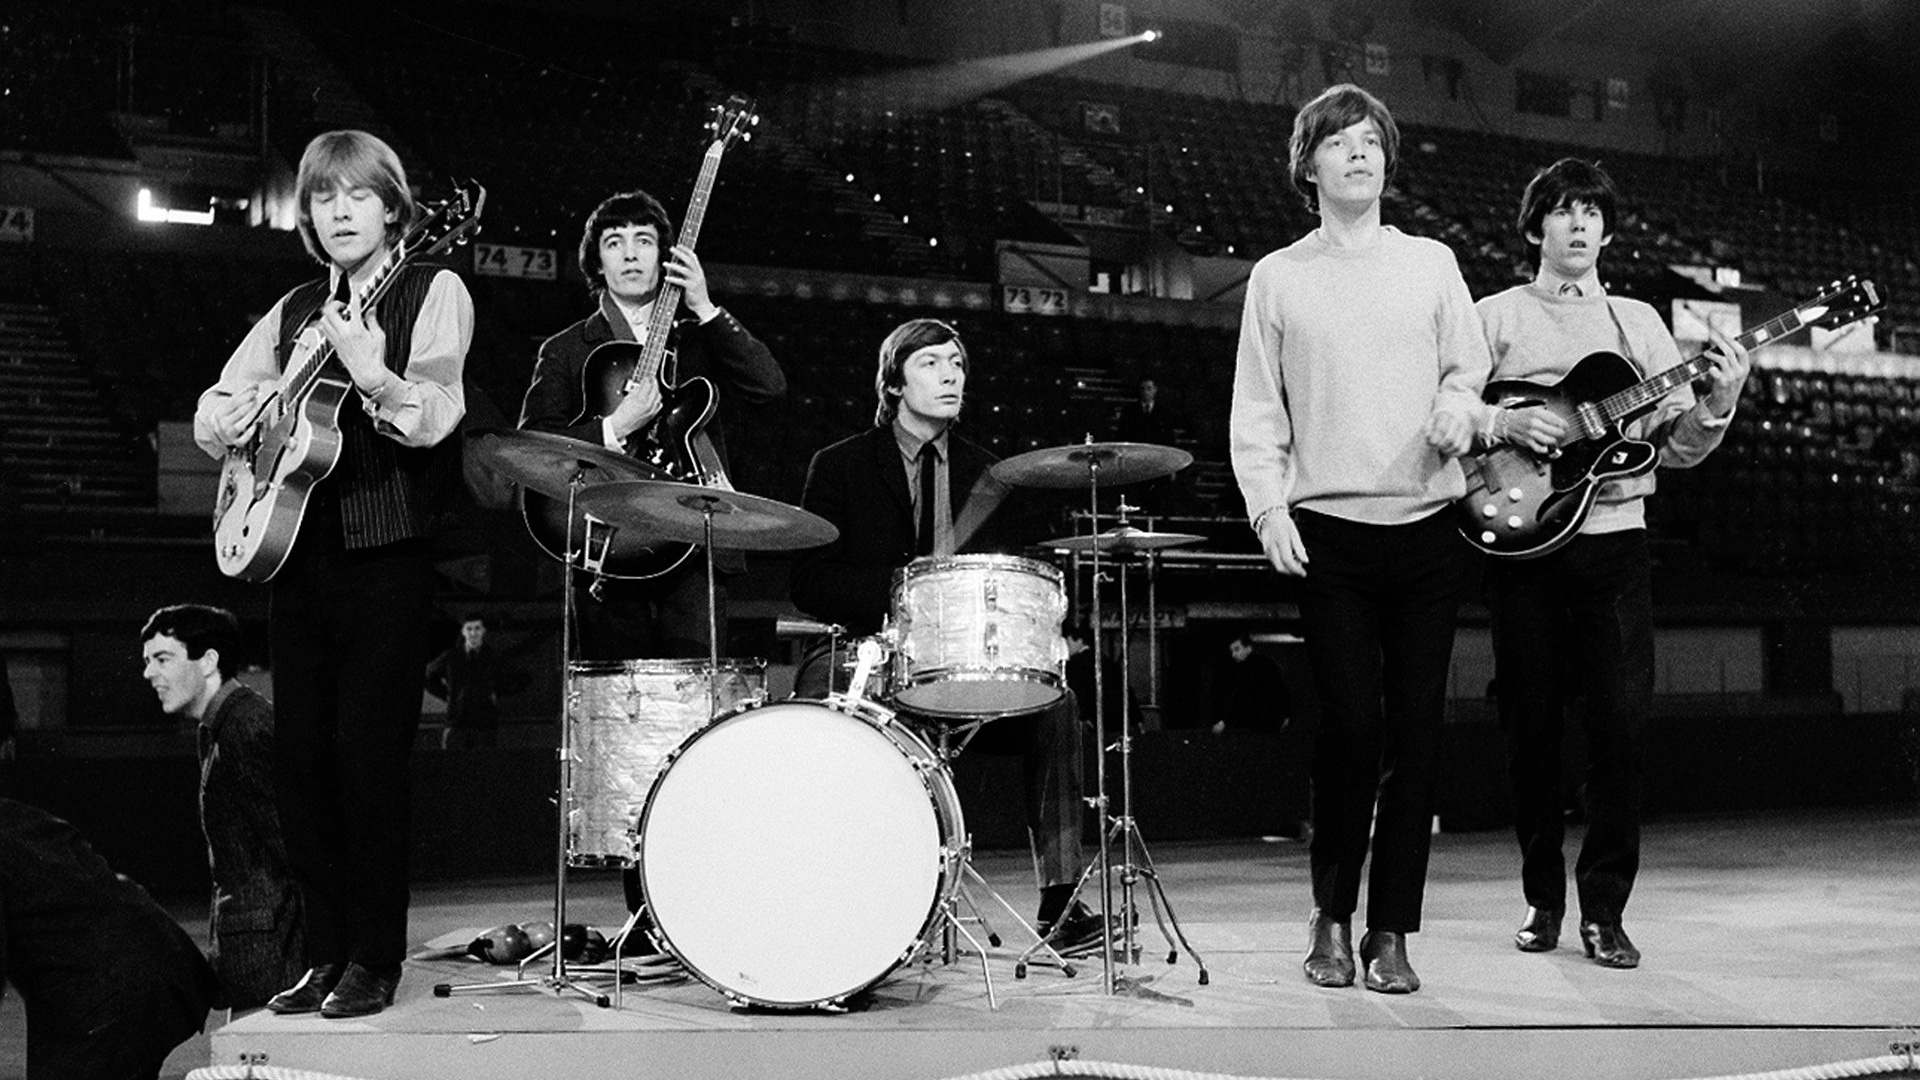 Los Rolling Stones durante un ensayo en abril de 1964, con Brian Jones, Bill Wyman, Charlie Watts, Mick Jagger y Keith Richards. 
AP